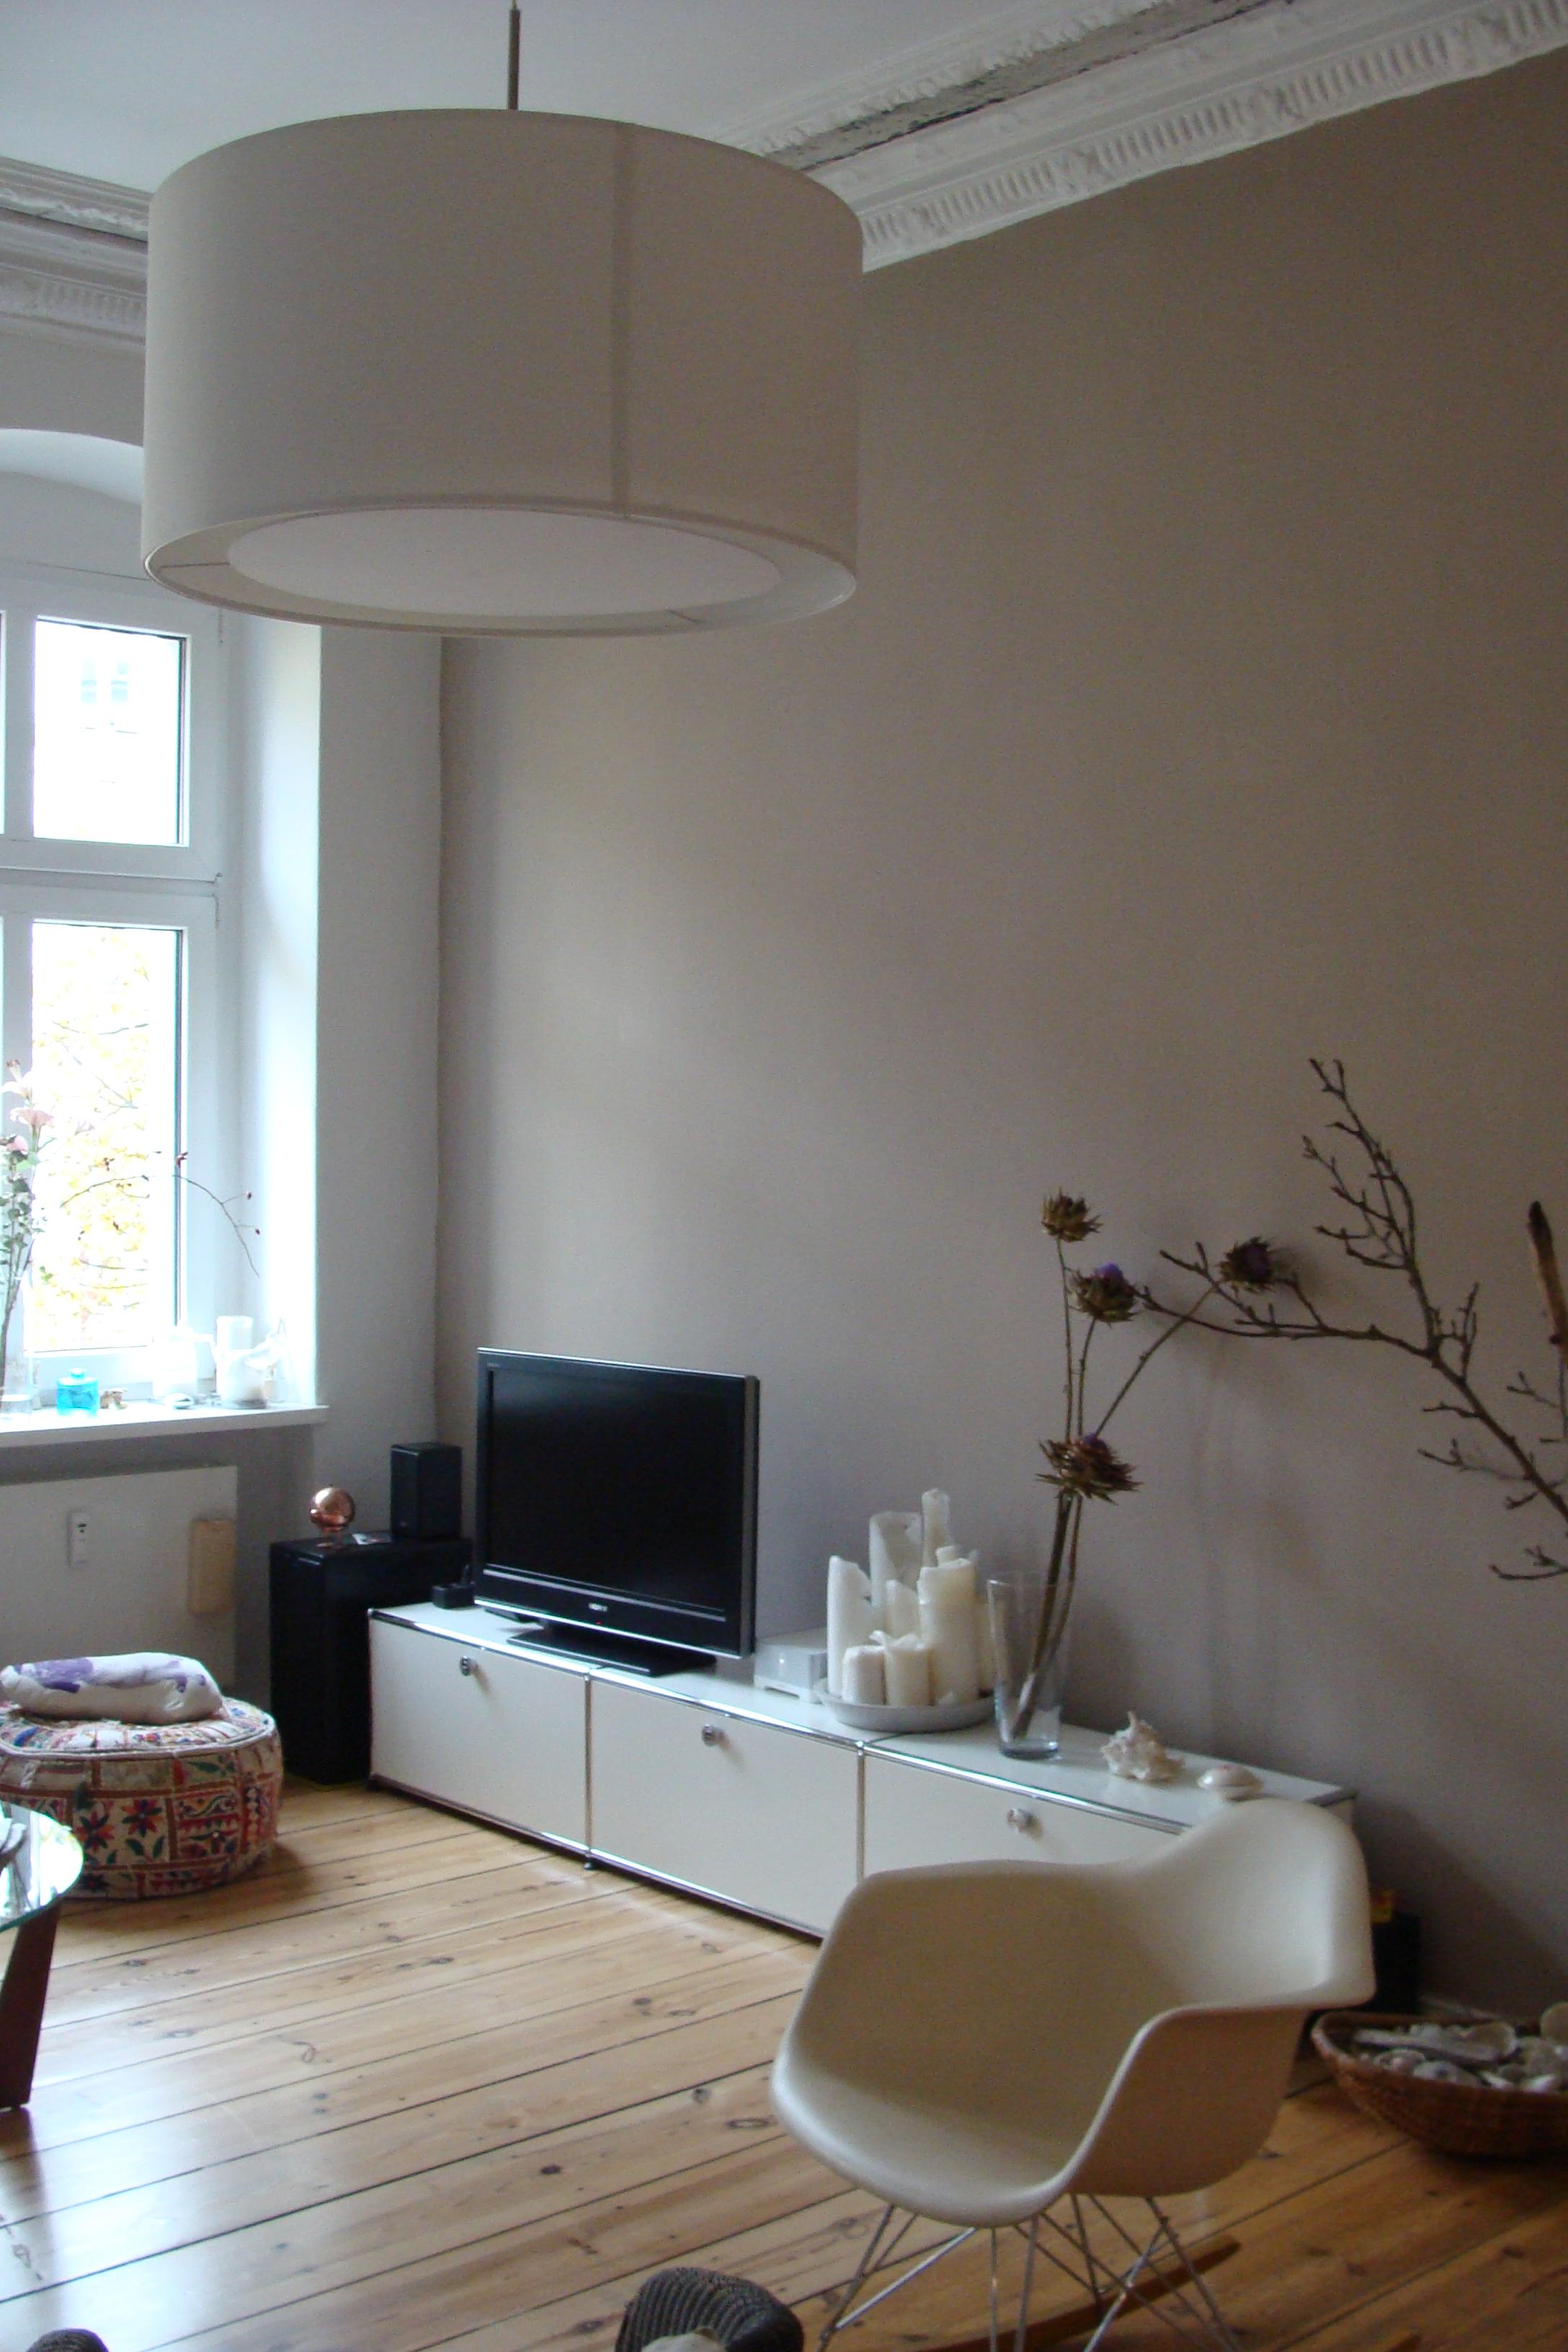 Sandfarbene Wand im Wohnzimmer #wohnzimmer #sideboard #ethno ©Mareike Kühn Interior Stylist & Visual Merchandiser